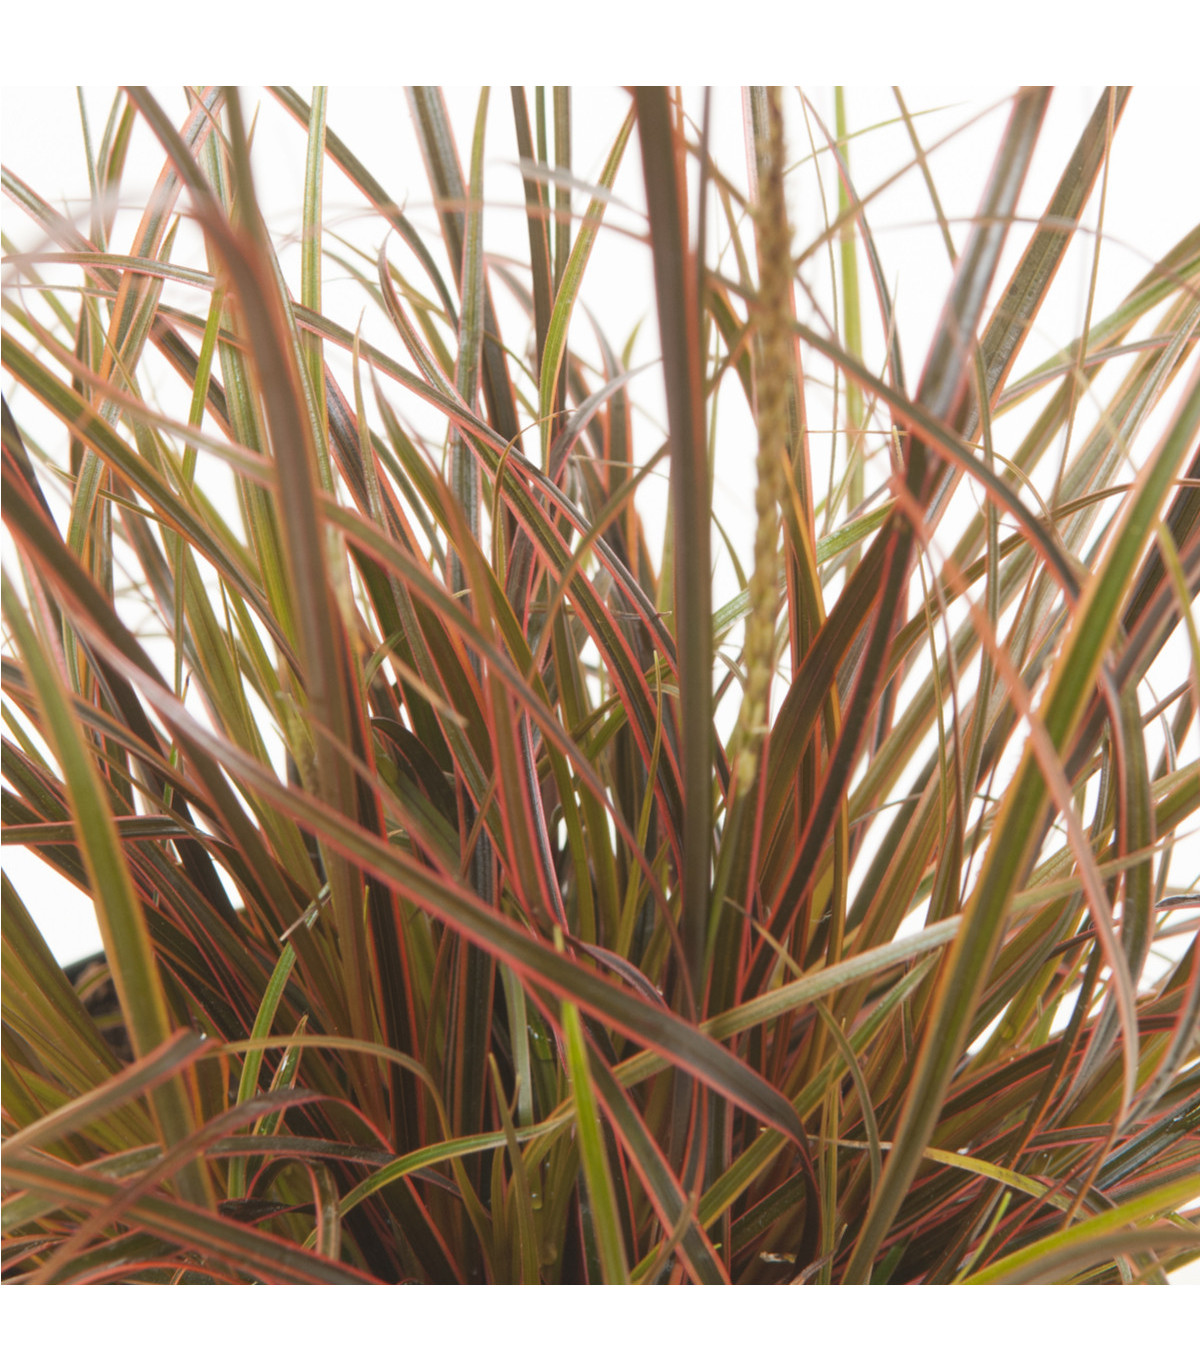 Okrasná tráva - Uncinia egmontiana - osivo okrasné trávy - 5 ks